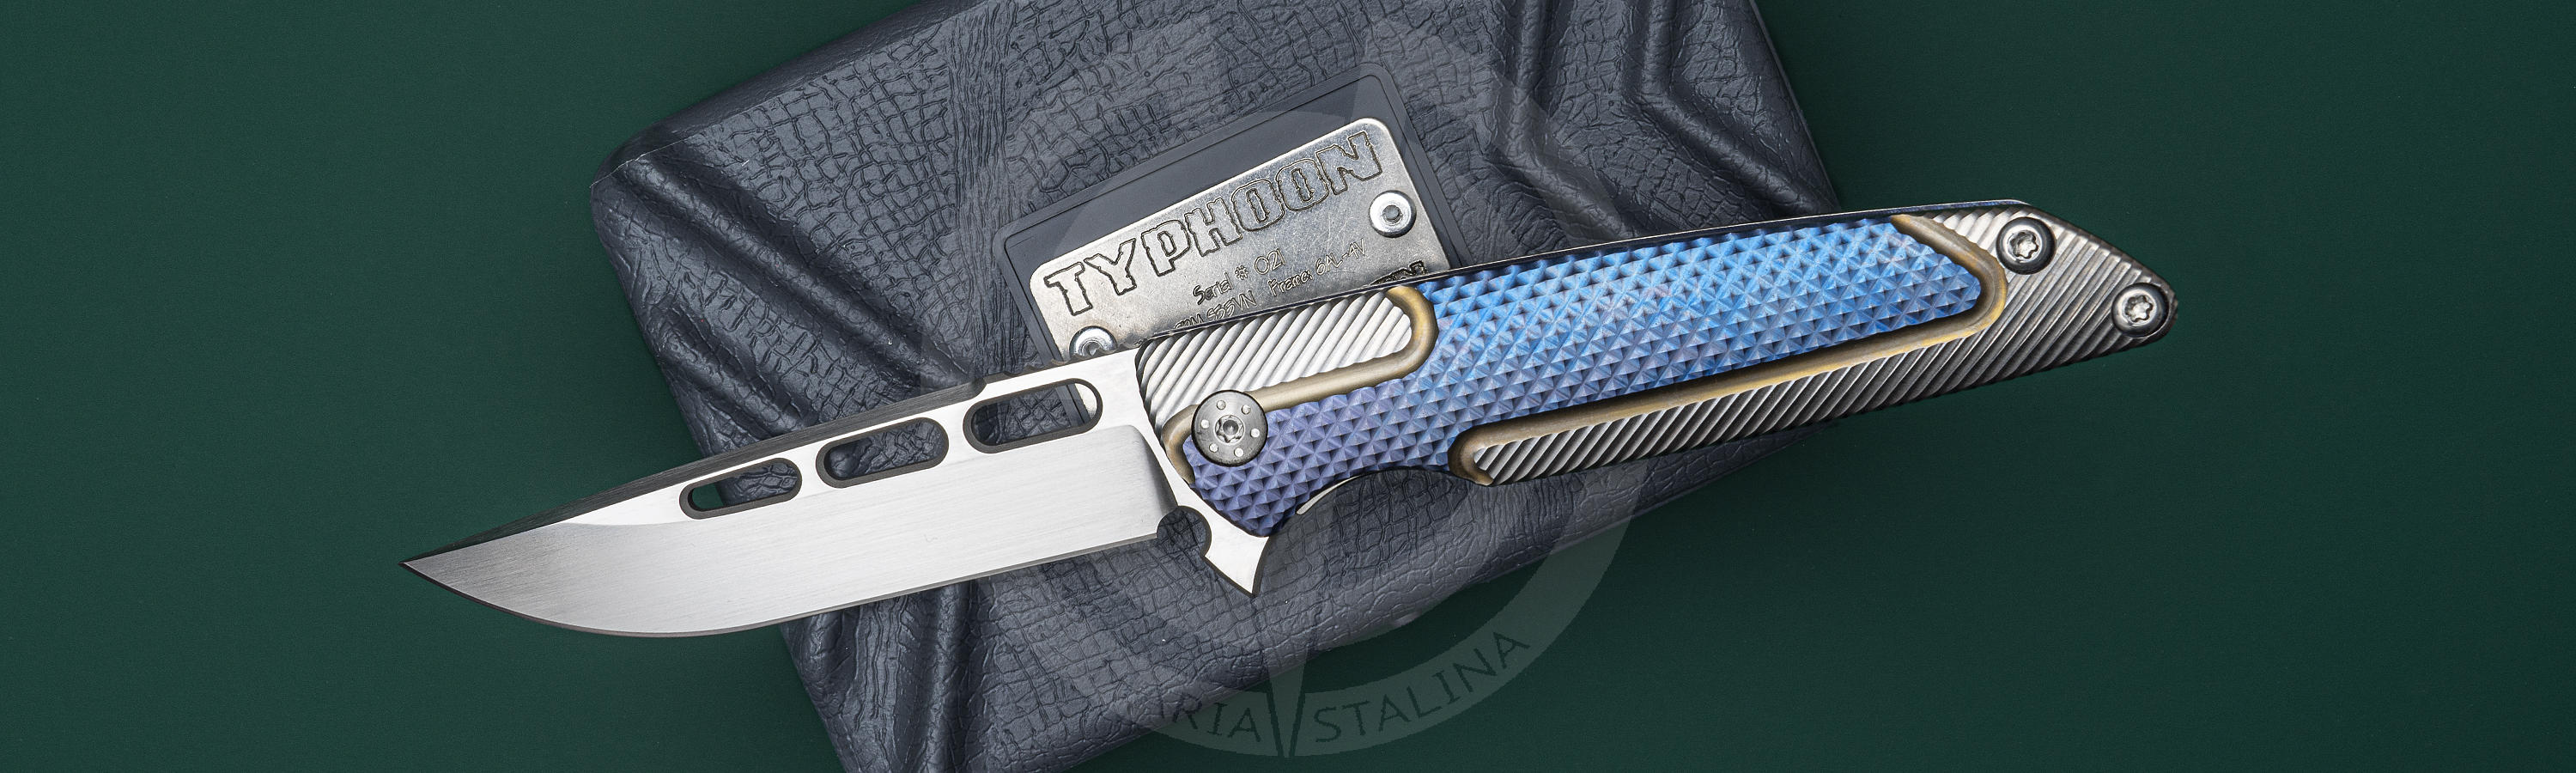 Кастомный нож ручной работы Typhoon Blue